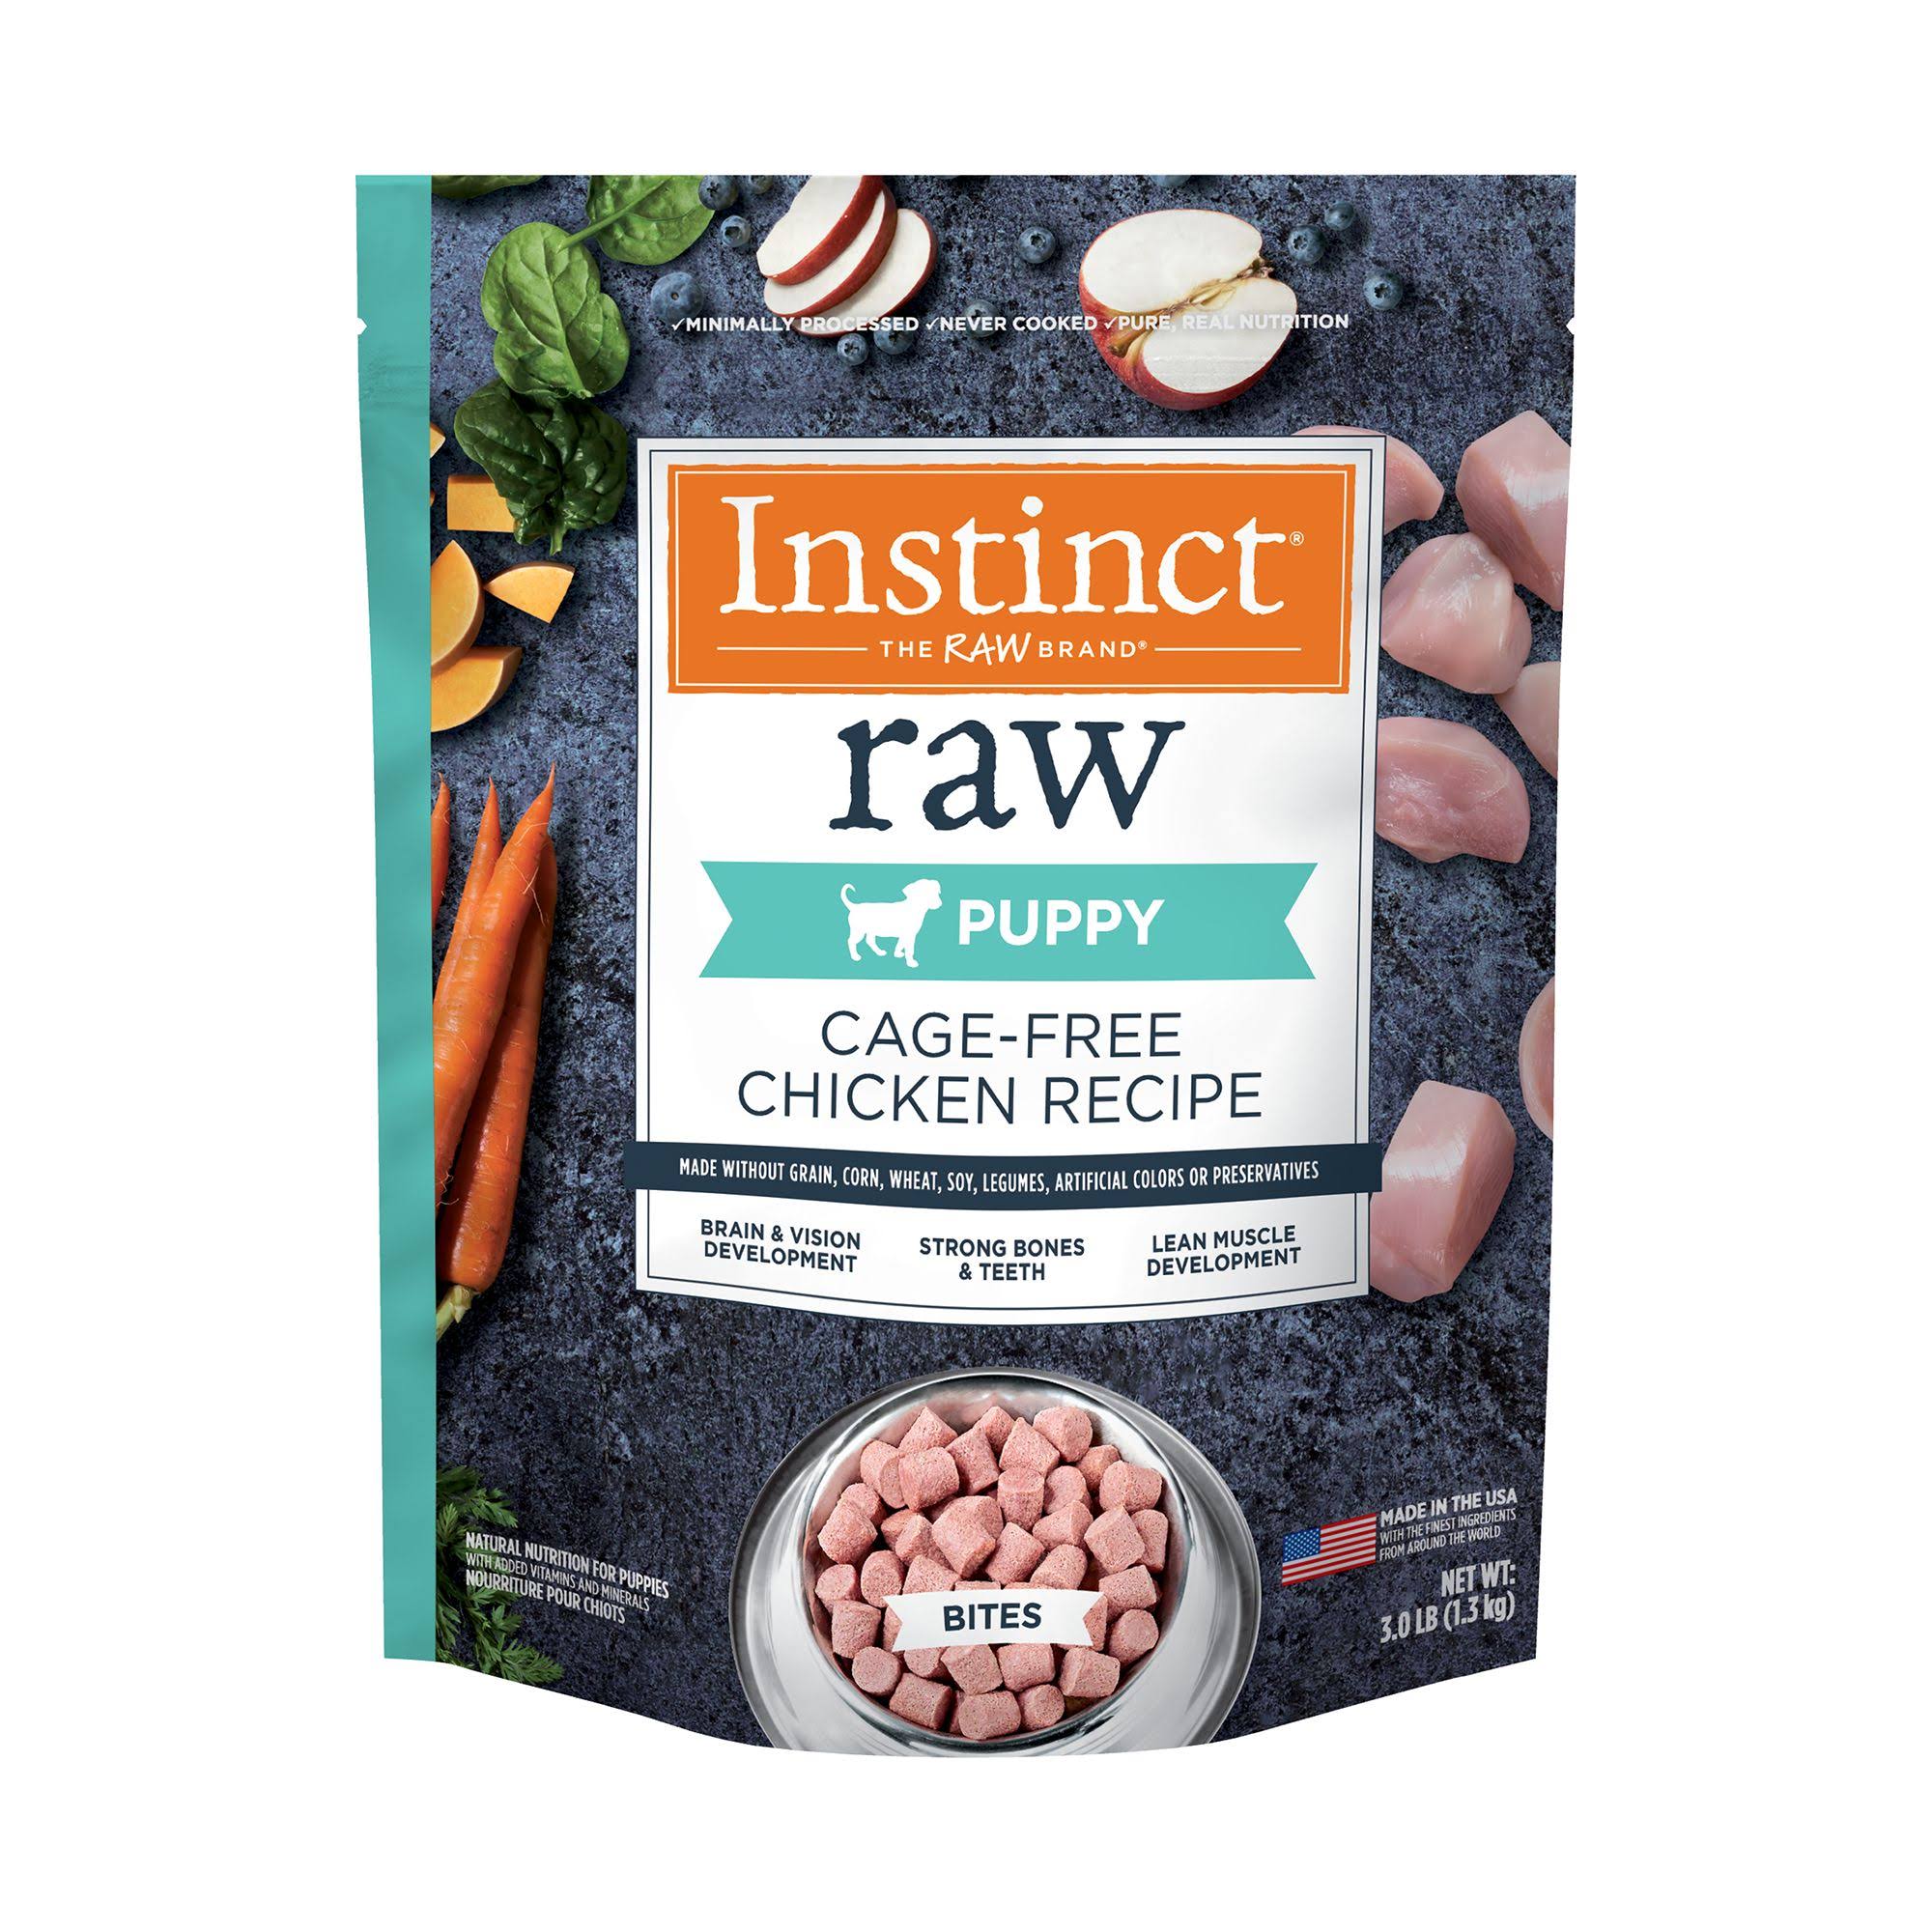 Instinct Frozen Raw Bites Grain-Free Cage-Free Chicken Recipe Puppy Food, 3 lbs.